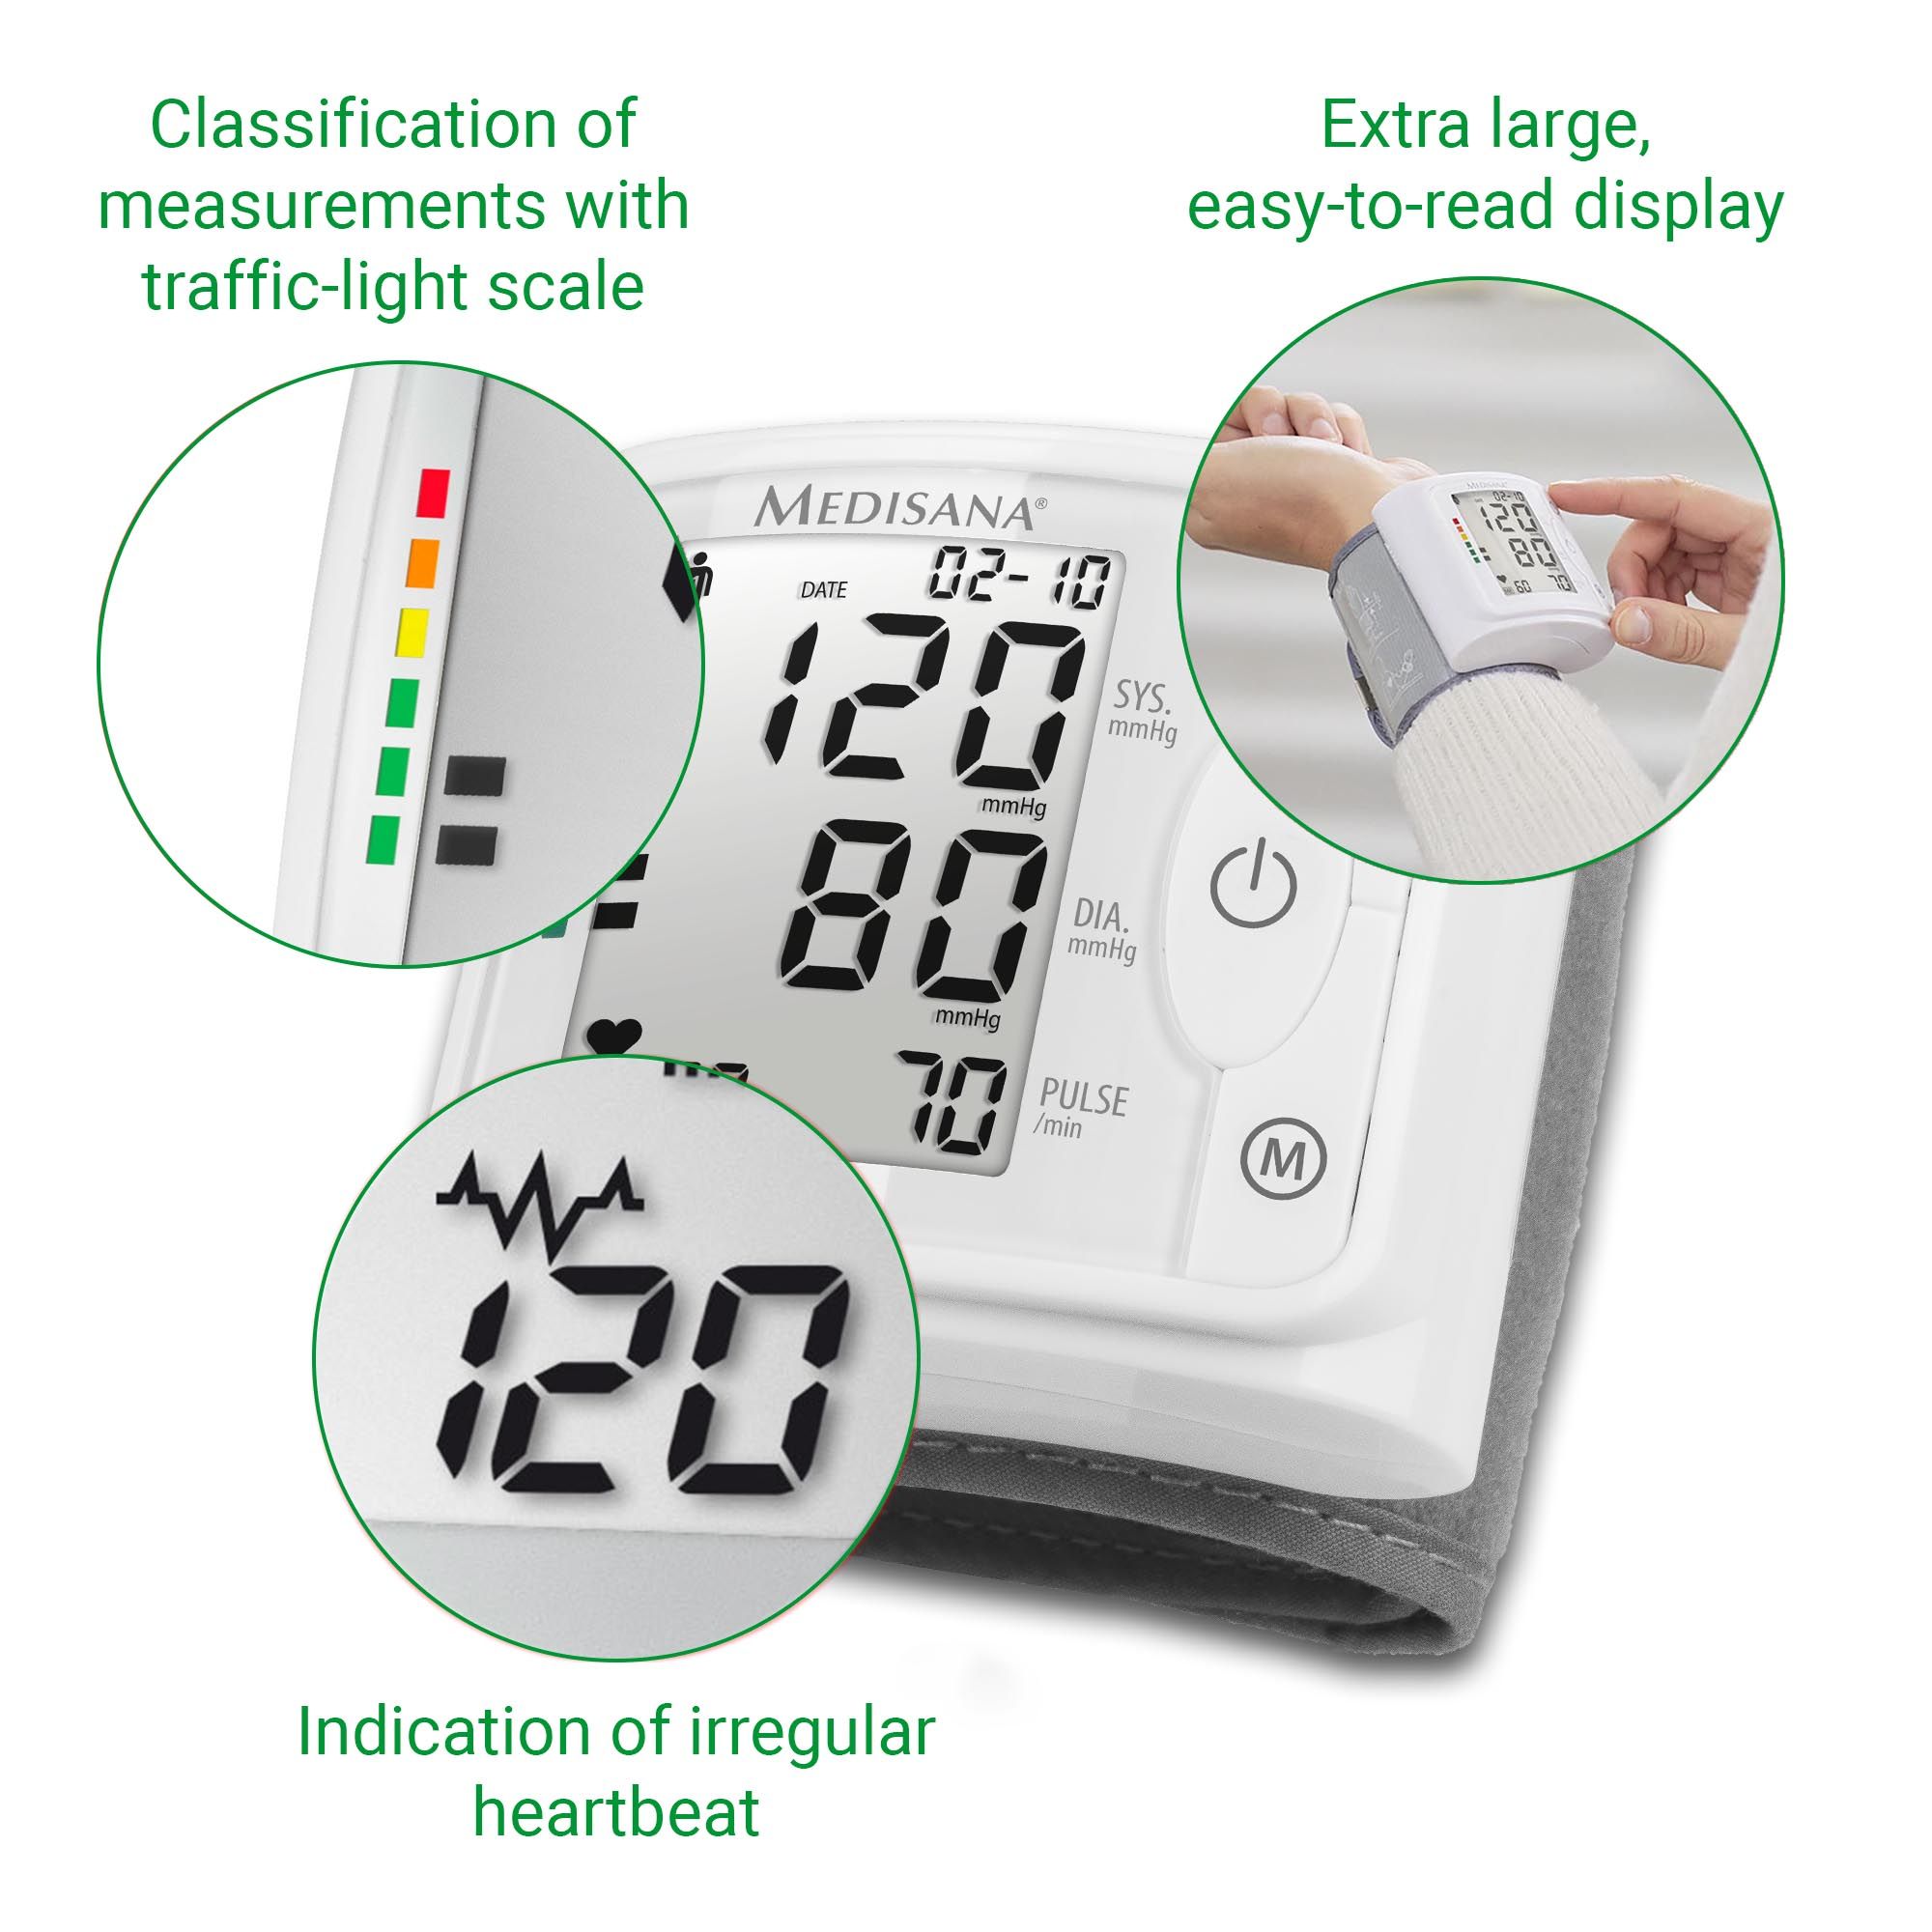 medisana BW 320 Handgelenk-Blutdruckmessgerät | Blutdruckmessung | Pulsmessung | Speicherfunktion